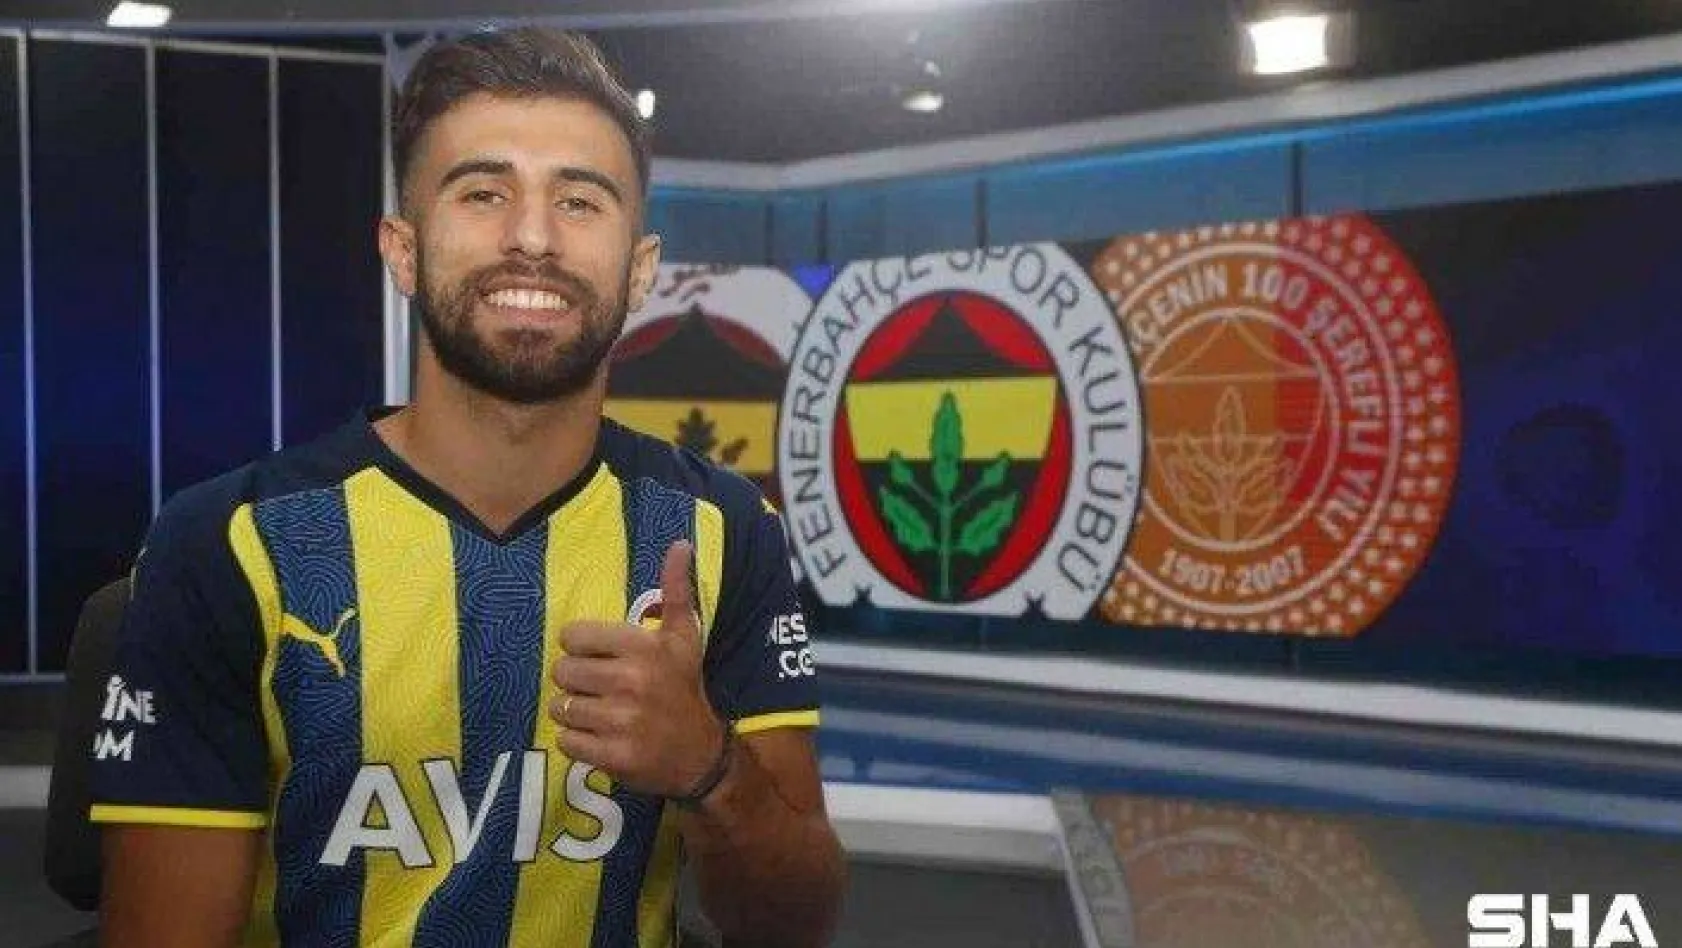 Fenerbahçe, Diego Rossi ile 2021-22 sezonu kiralık, sonraki 3 sezon satın alma opsiyonlu olmak üzere toplam 4 yıllık sözleşme imzalandığını açıkladı.